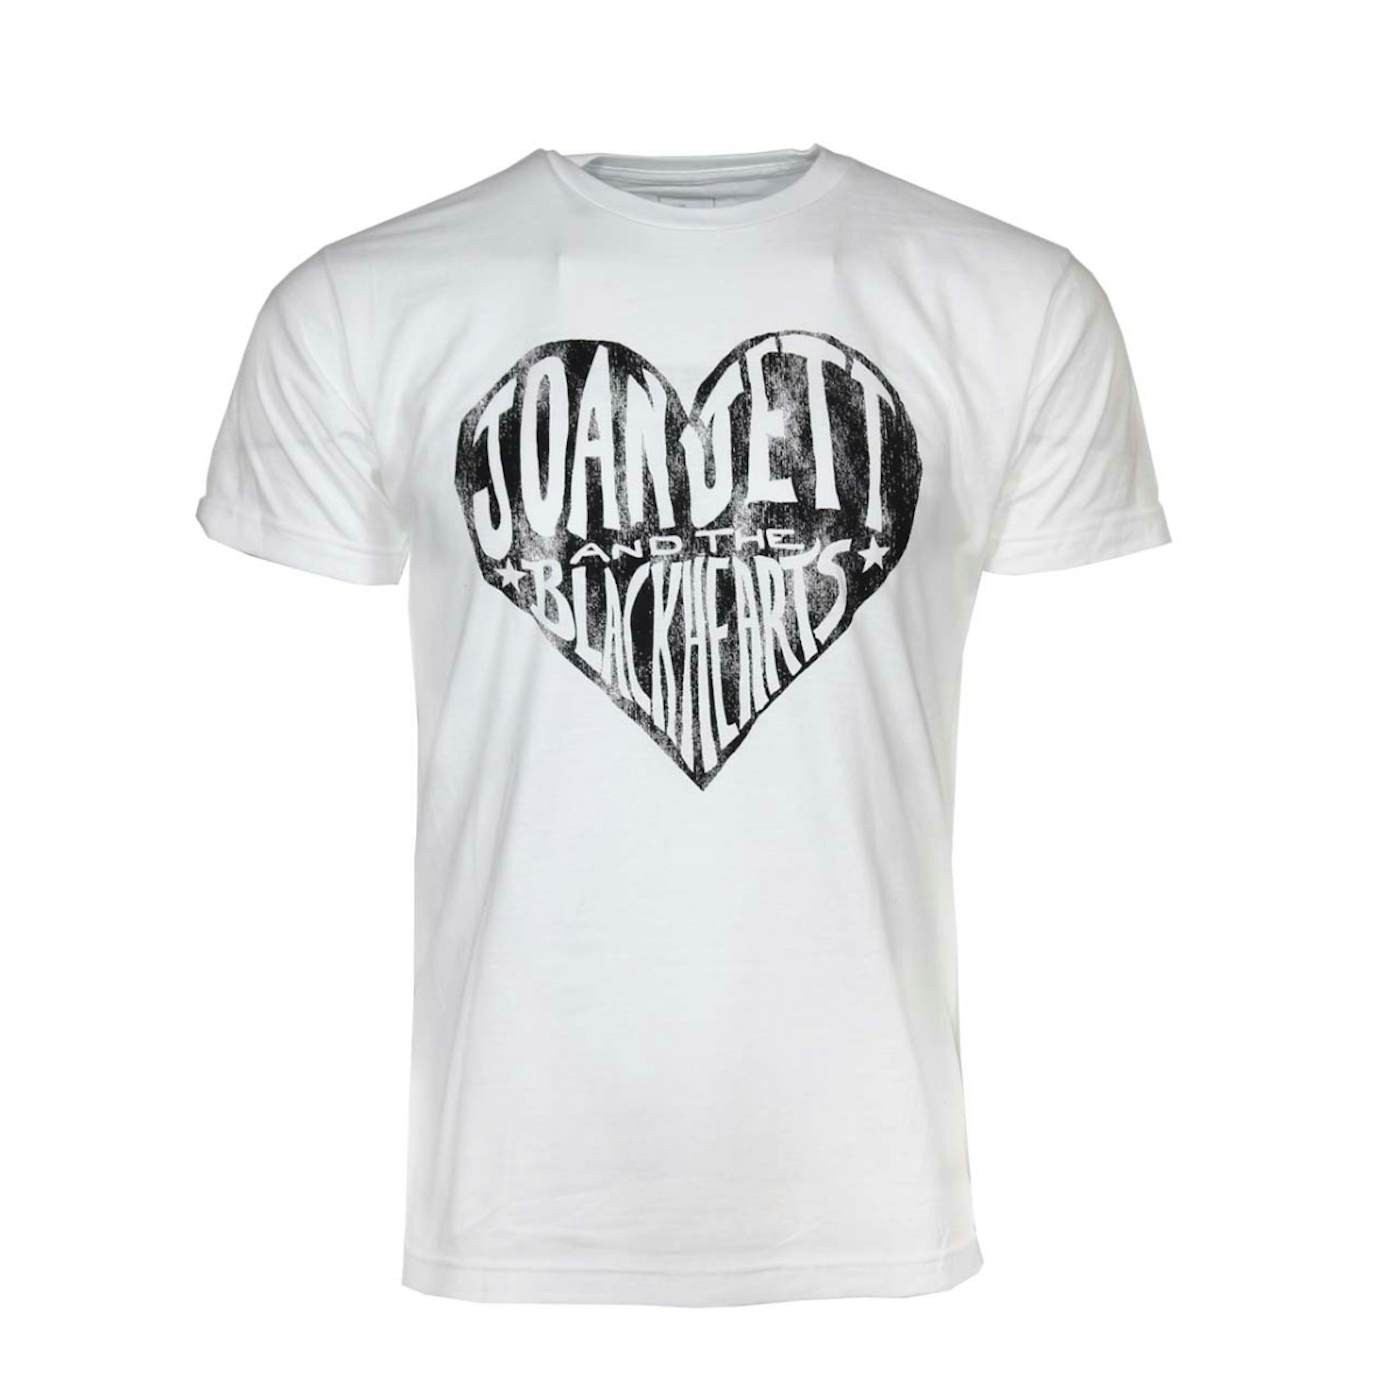 Joan Jett & the Blackhearts T Shirt | Joan Jett Blackhearts White T-Shirt